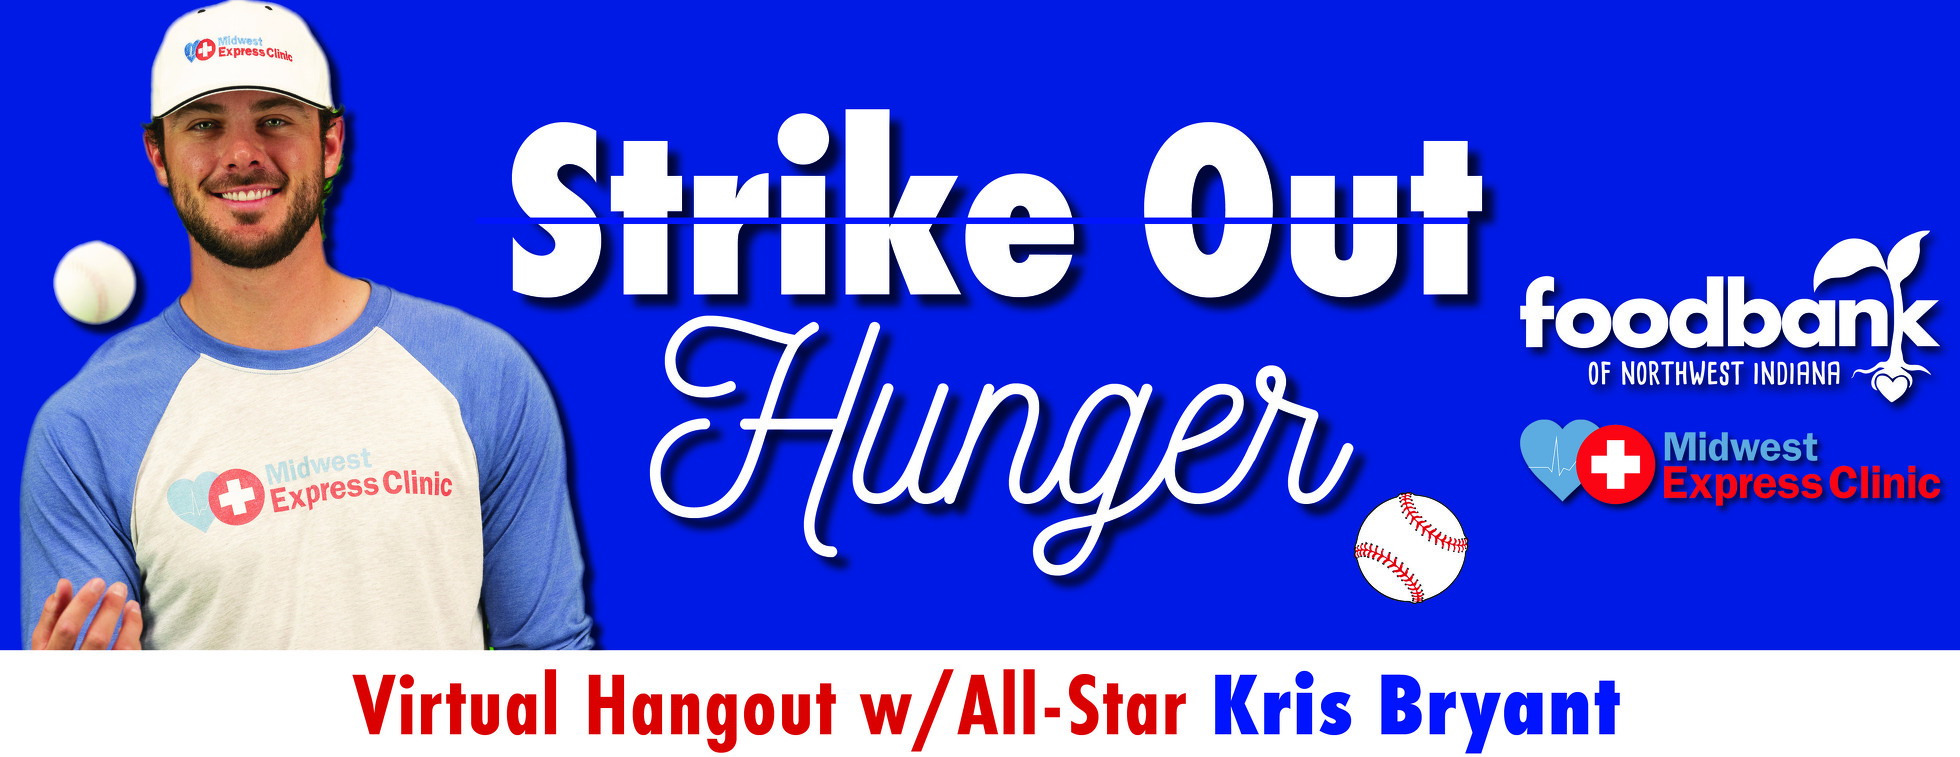 Strike Out Hunger Virtual Hangout w/ Kris Bryant